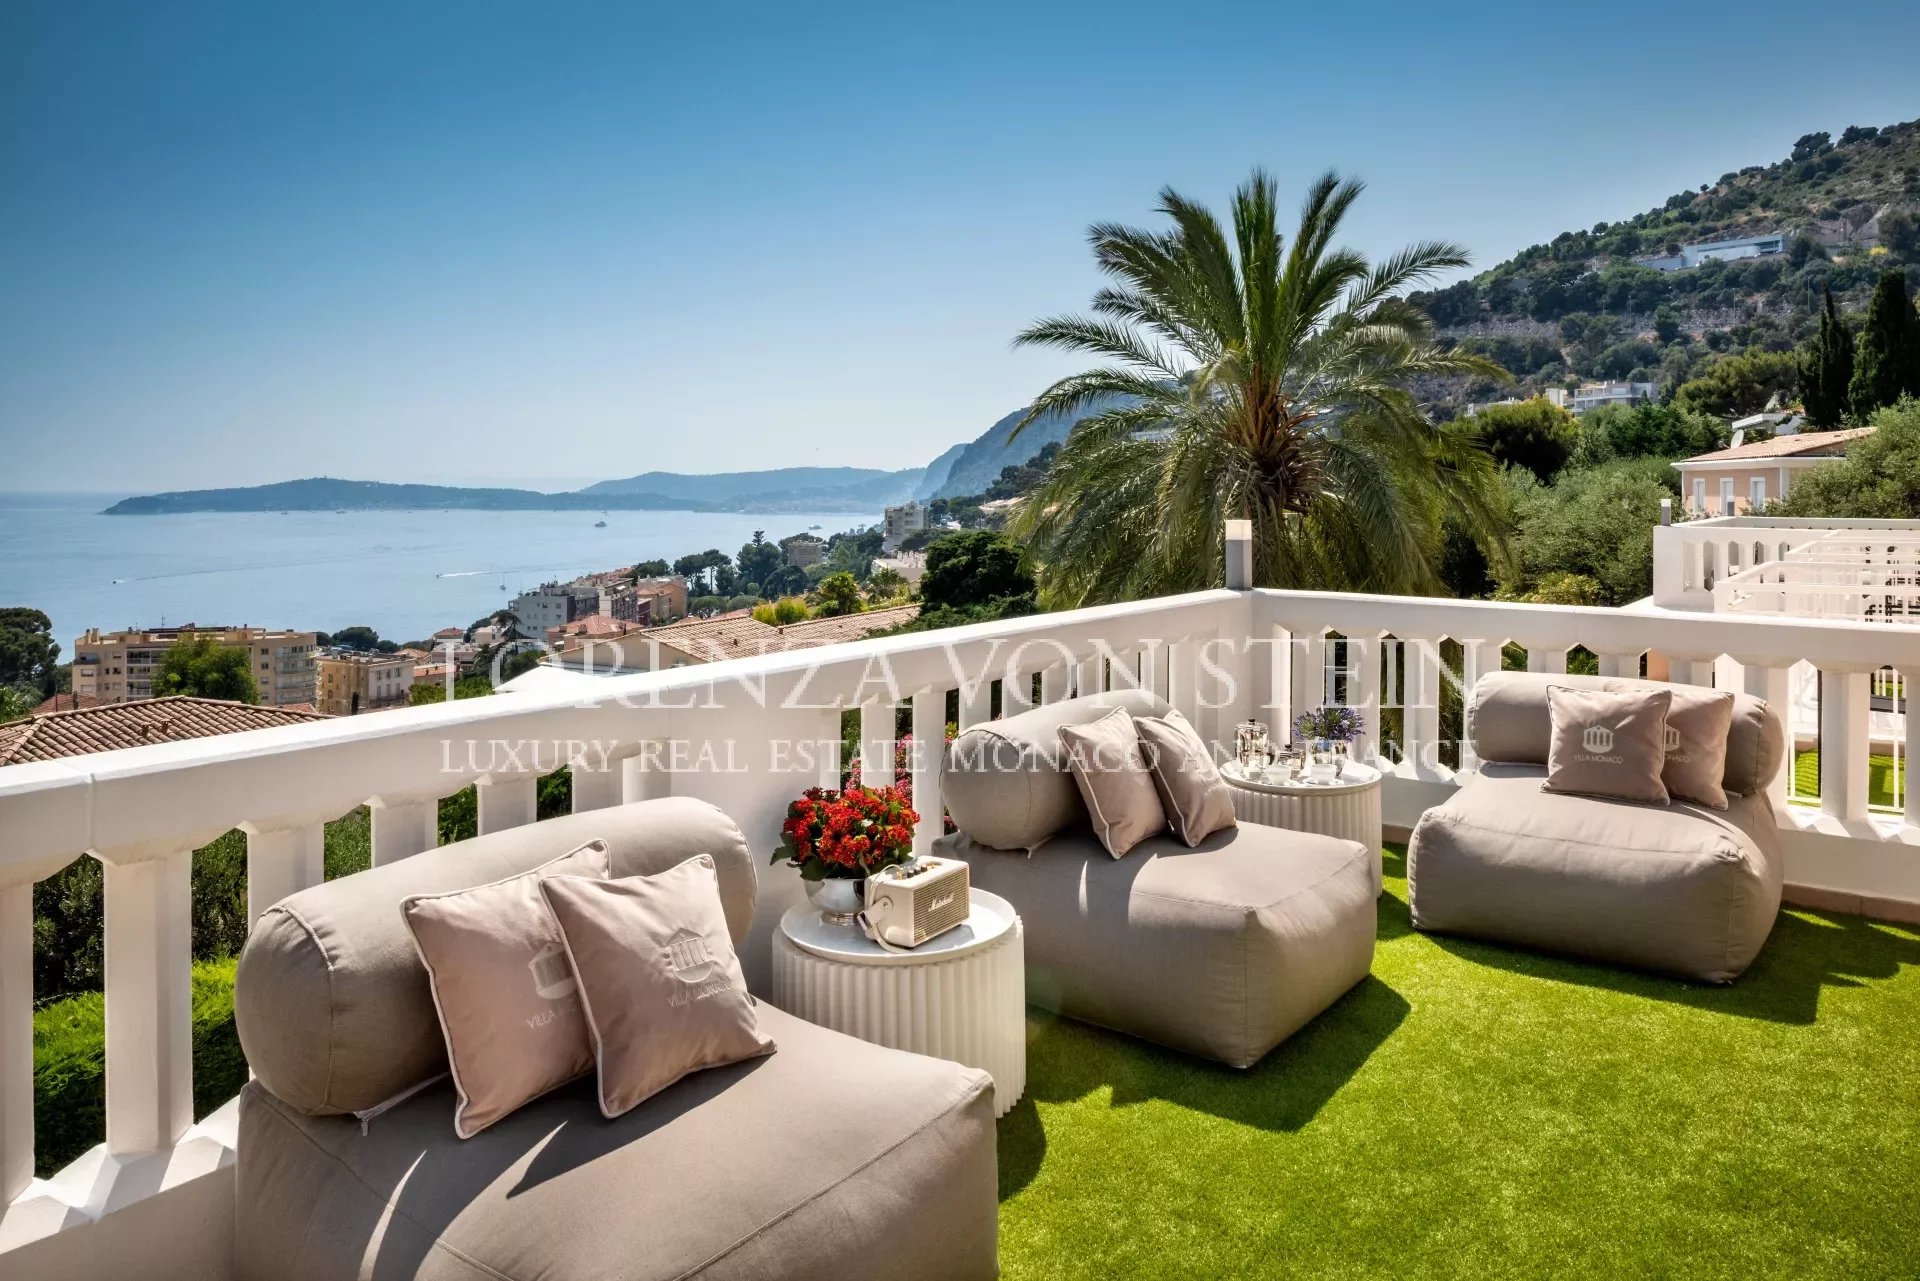 Prestigeträchtige Villa zur Vermietung vor den Toren Monacos